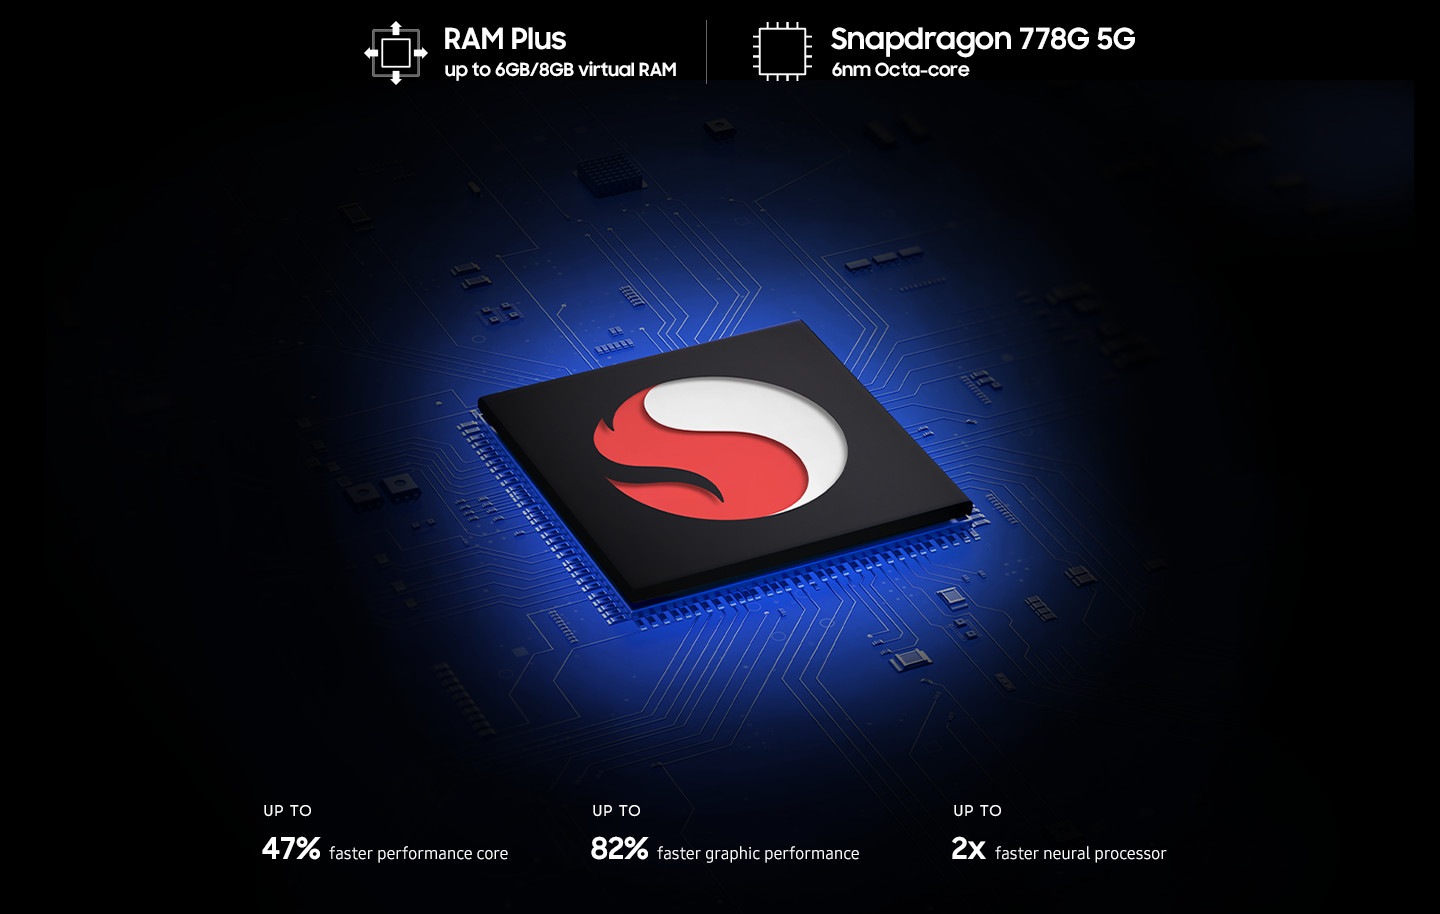 Une puce de traitement noire présente un grand logo Snapdragon au centre.  Autour de la puce se trouvent un texte qui lit RAM Plus jusqu'à 6 Go/8 Go de RAM virtuelle, Snapdragon 778G 5G 6 nm Octa-core, un cœur de performances jusqu'à 47 % plus rapide, des performances graphiques jusqu'à 82 % plus rapides, un processeur neuronal jusqu'à 2 fois plus rapide.